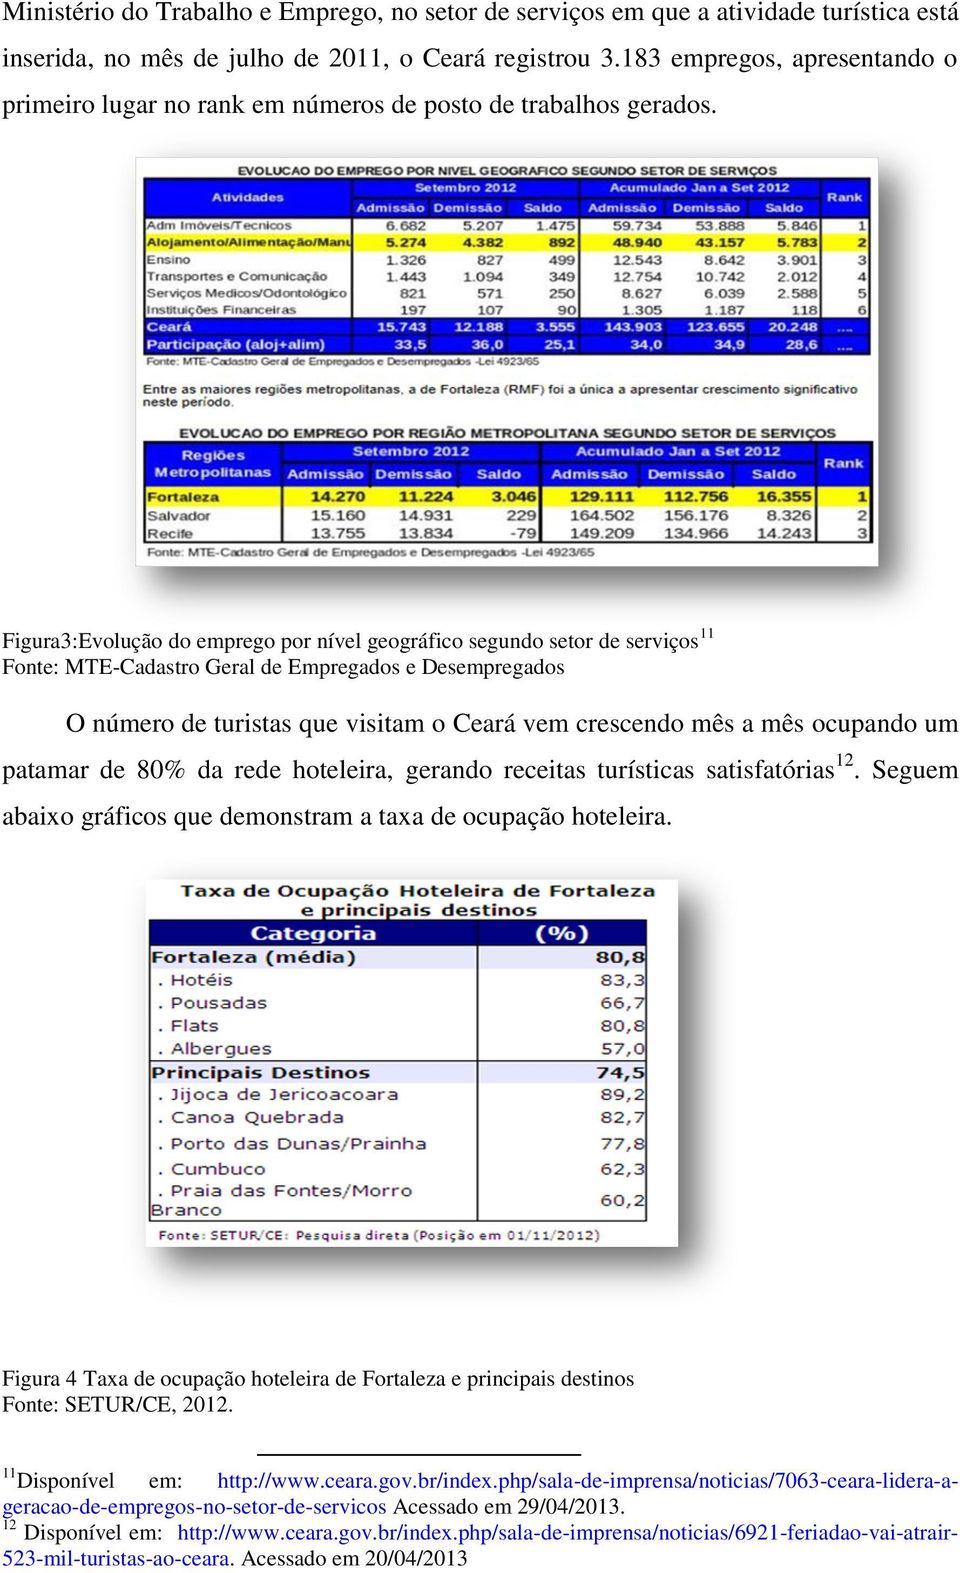 Figura3:Evolução do emprego por nível geográfico segundo setor de serviços 11 Fonte: MTE-Cadastro Geral de Empregados e Desempregados O número de turistas que visitam o Ceará vem crescendo mês a mês